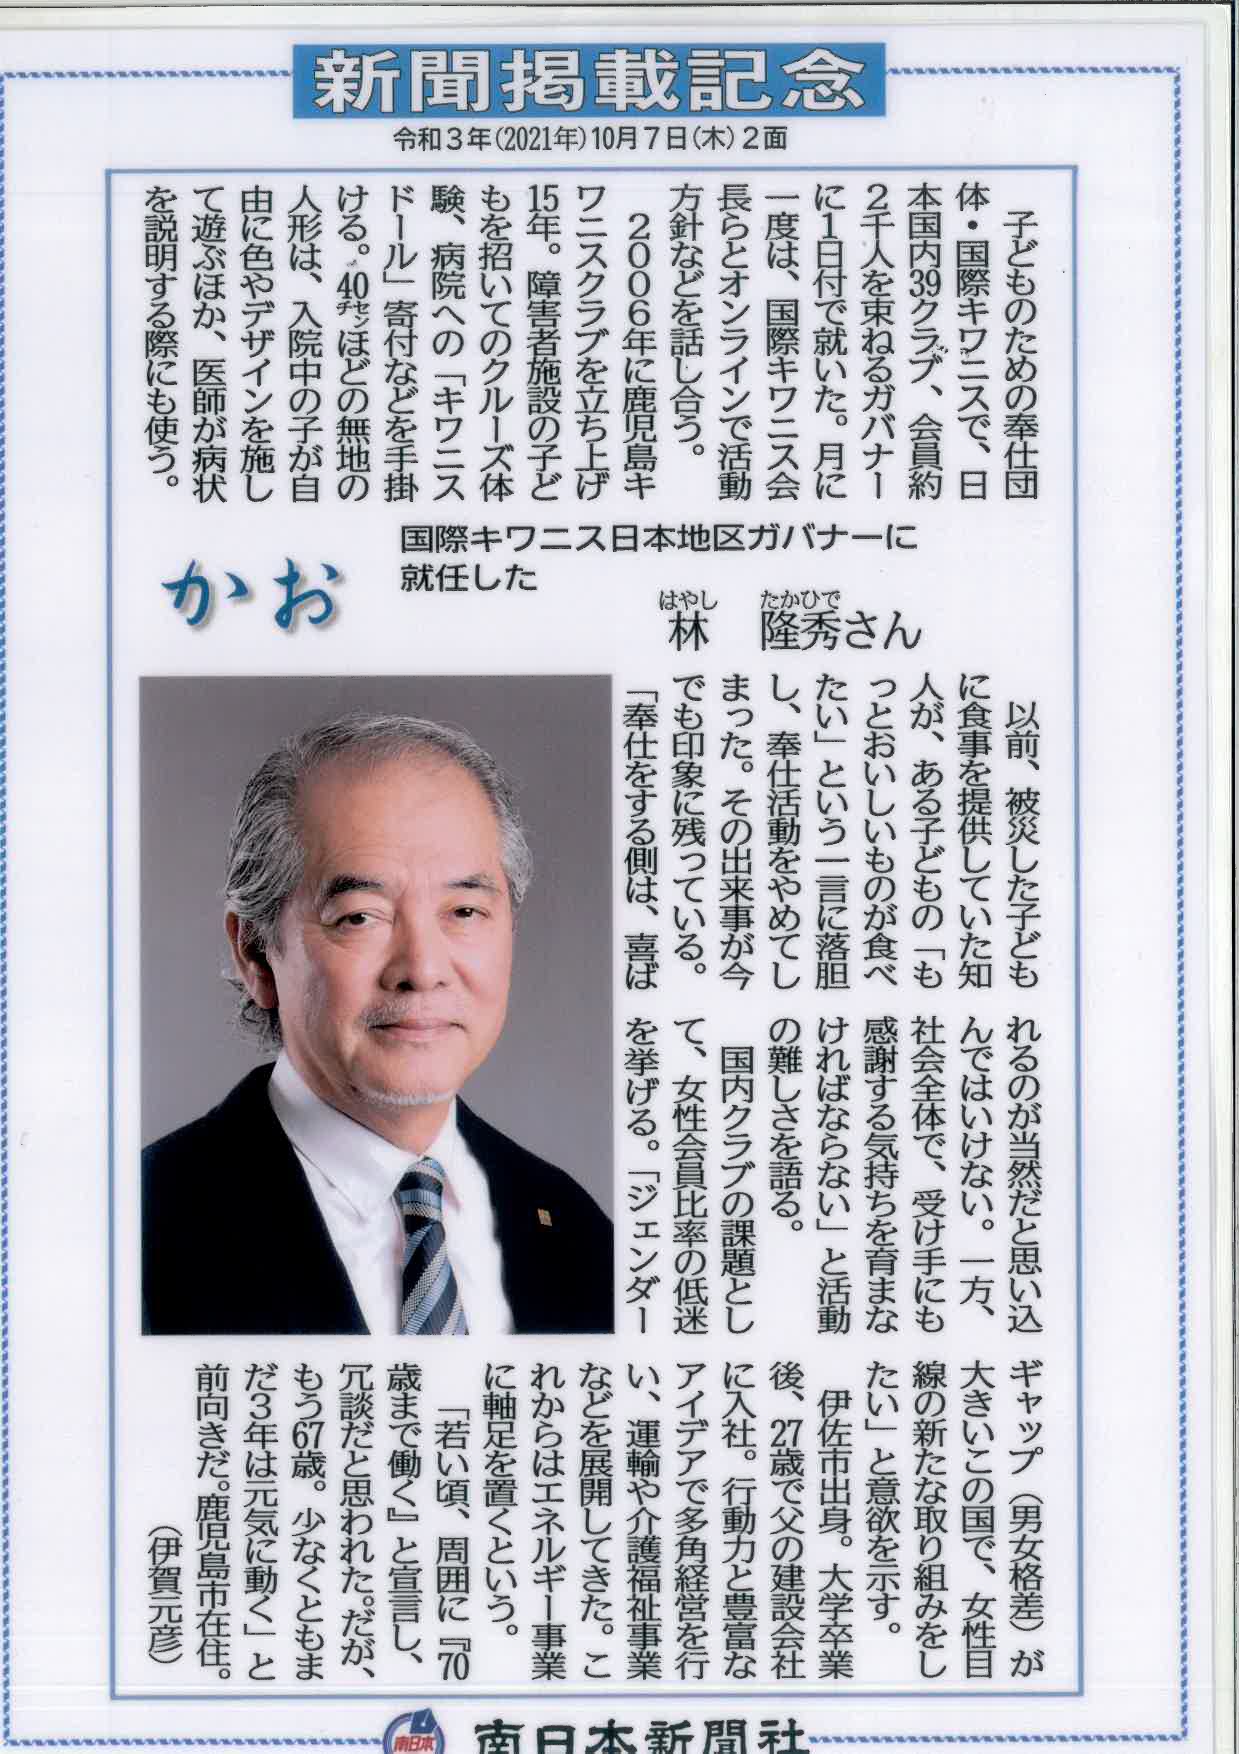 林初代会長が新聞へ掲載されました。